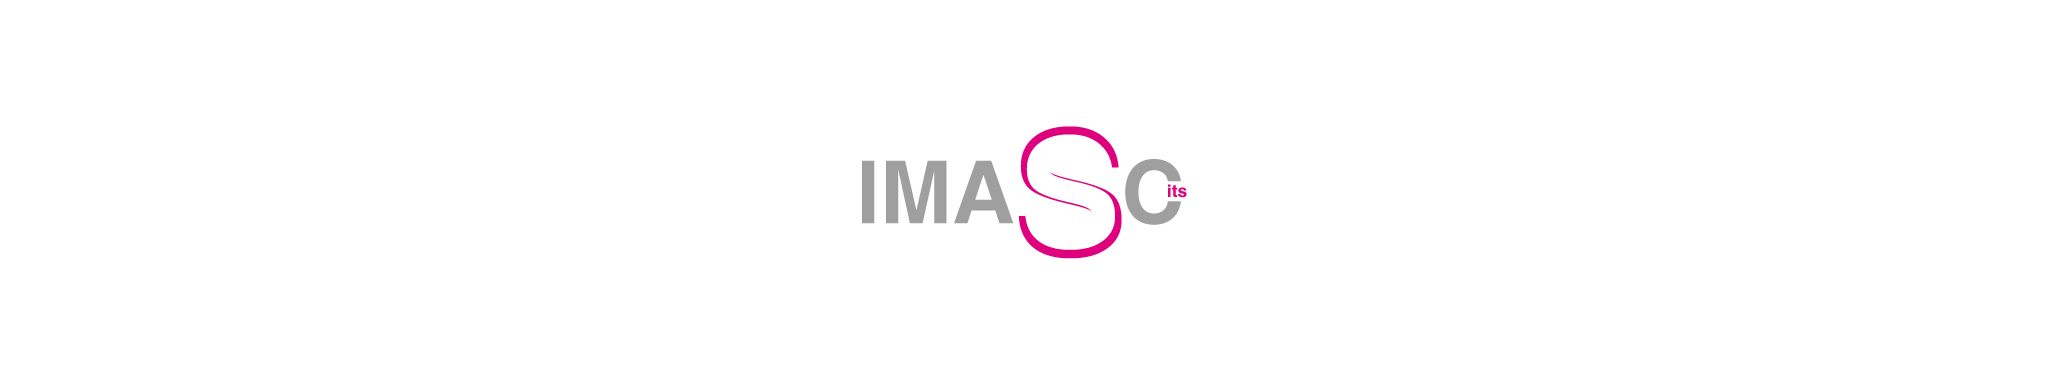 IMASCits Company profil başlığı